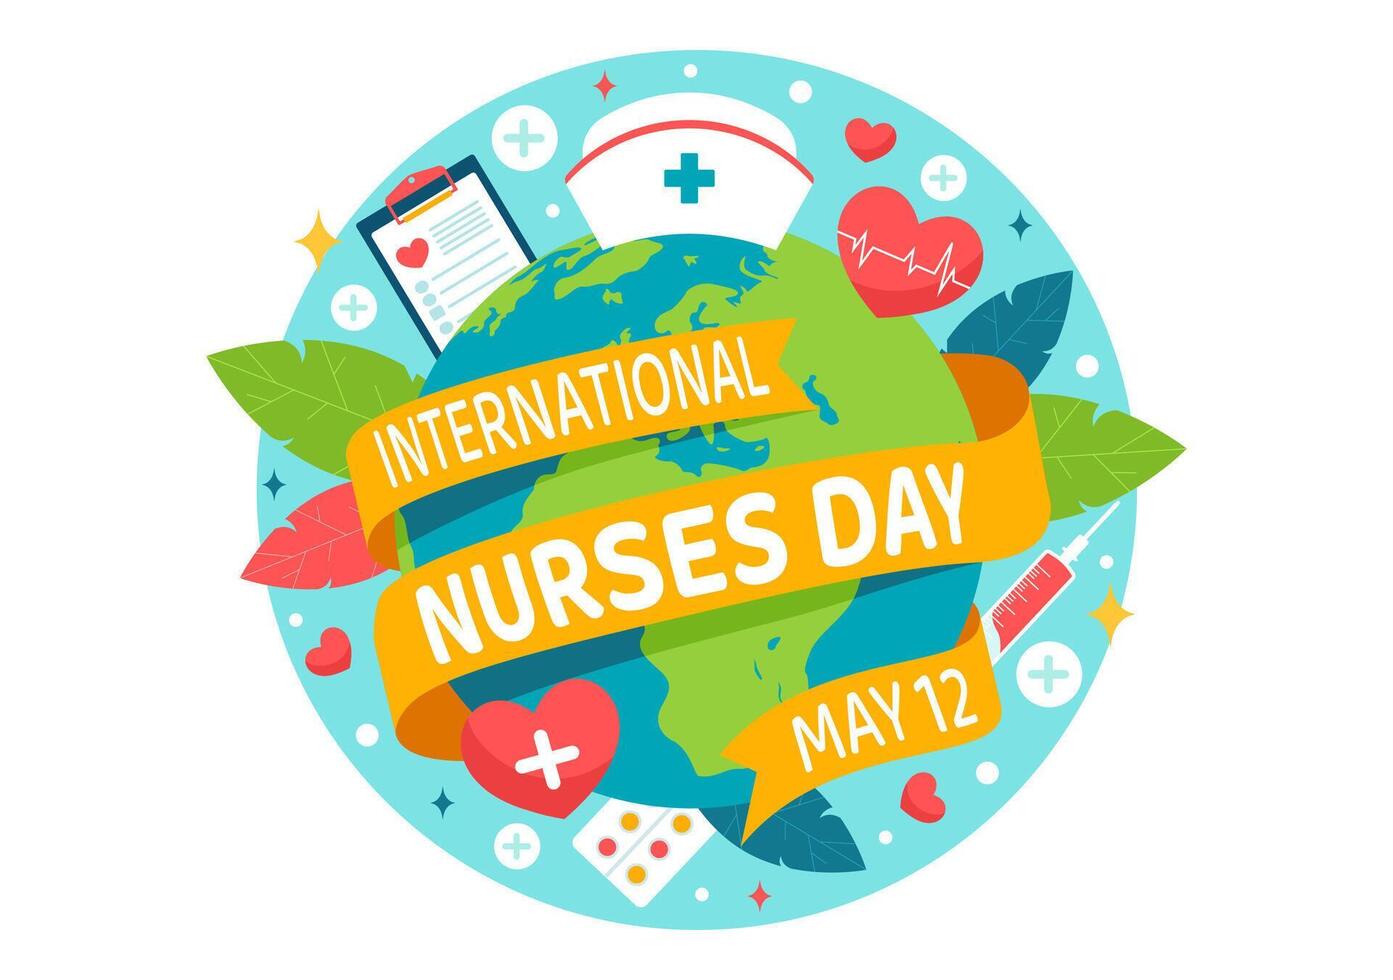 International Krankenschwestern Tag Vektor Illustration auf kann 12 zum Beiträge Das Krankenschwester machen zu Gesellschaft im Gesundheitswesen eben Kinder Karikatur Hintergrund